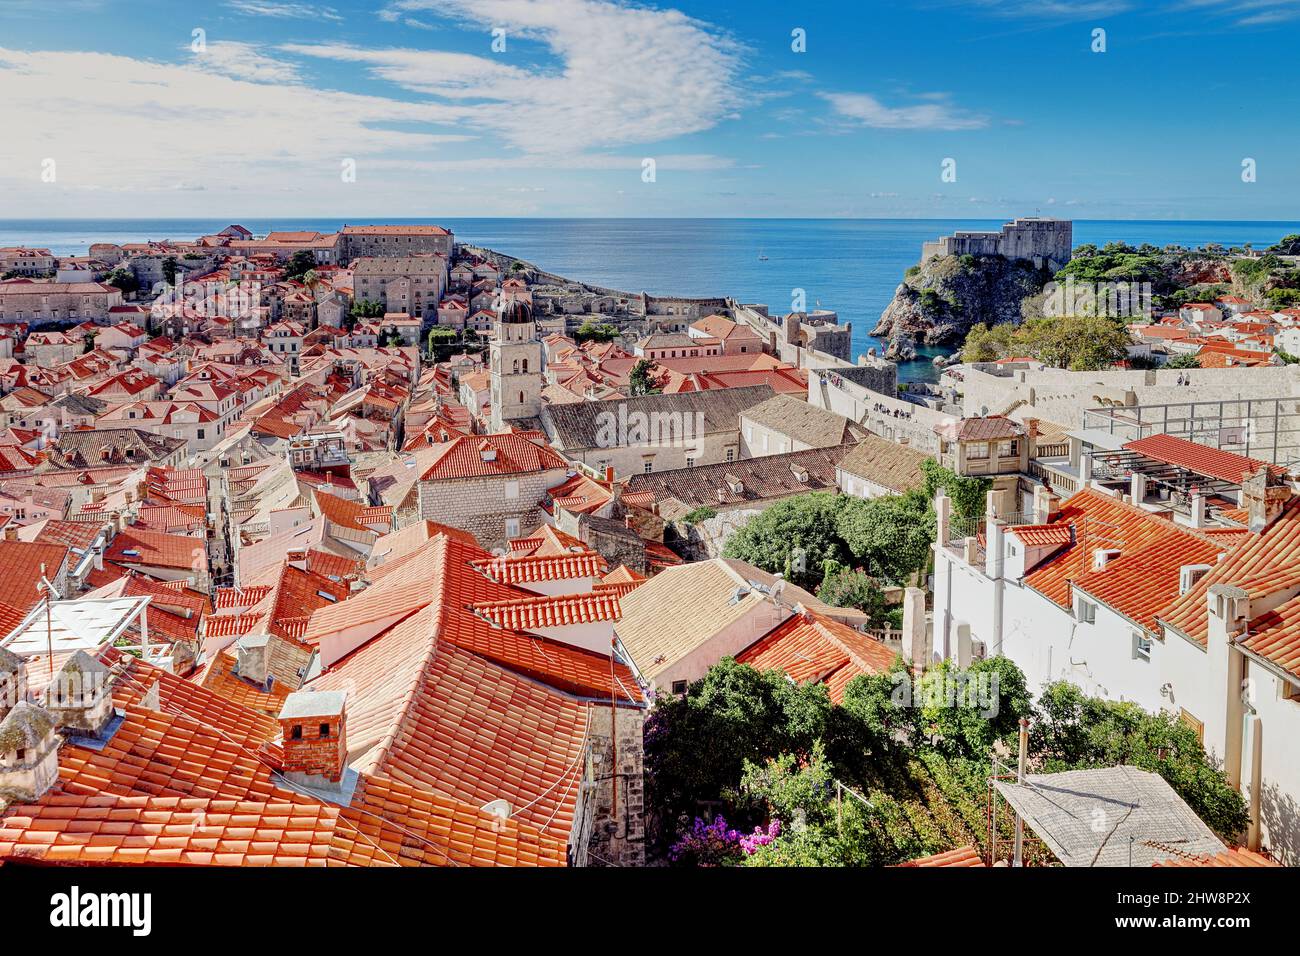 Vista aerea dalle mura della città dei tetti di terracotta rossa della città vecchia di Dubrovnik, Croazia Foto Stock